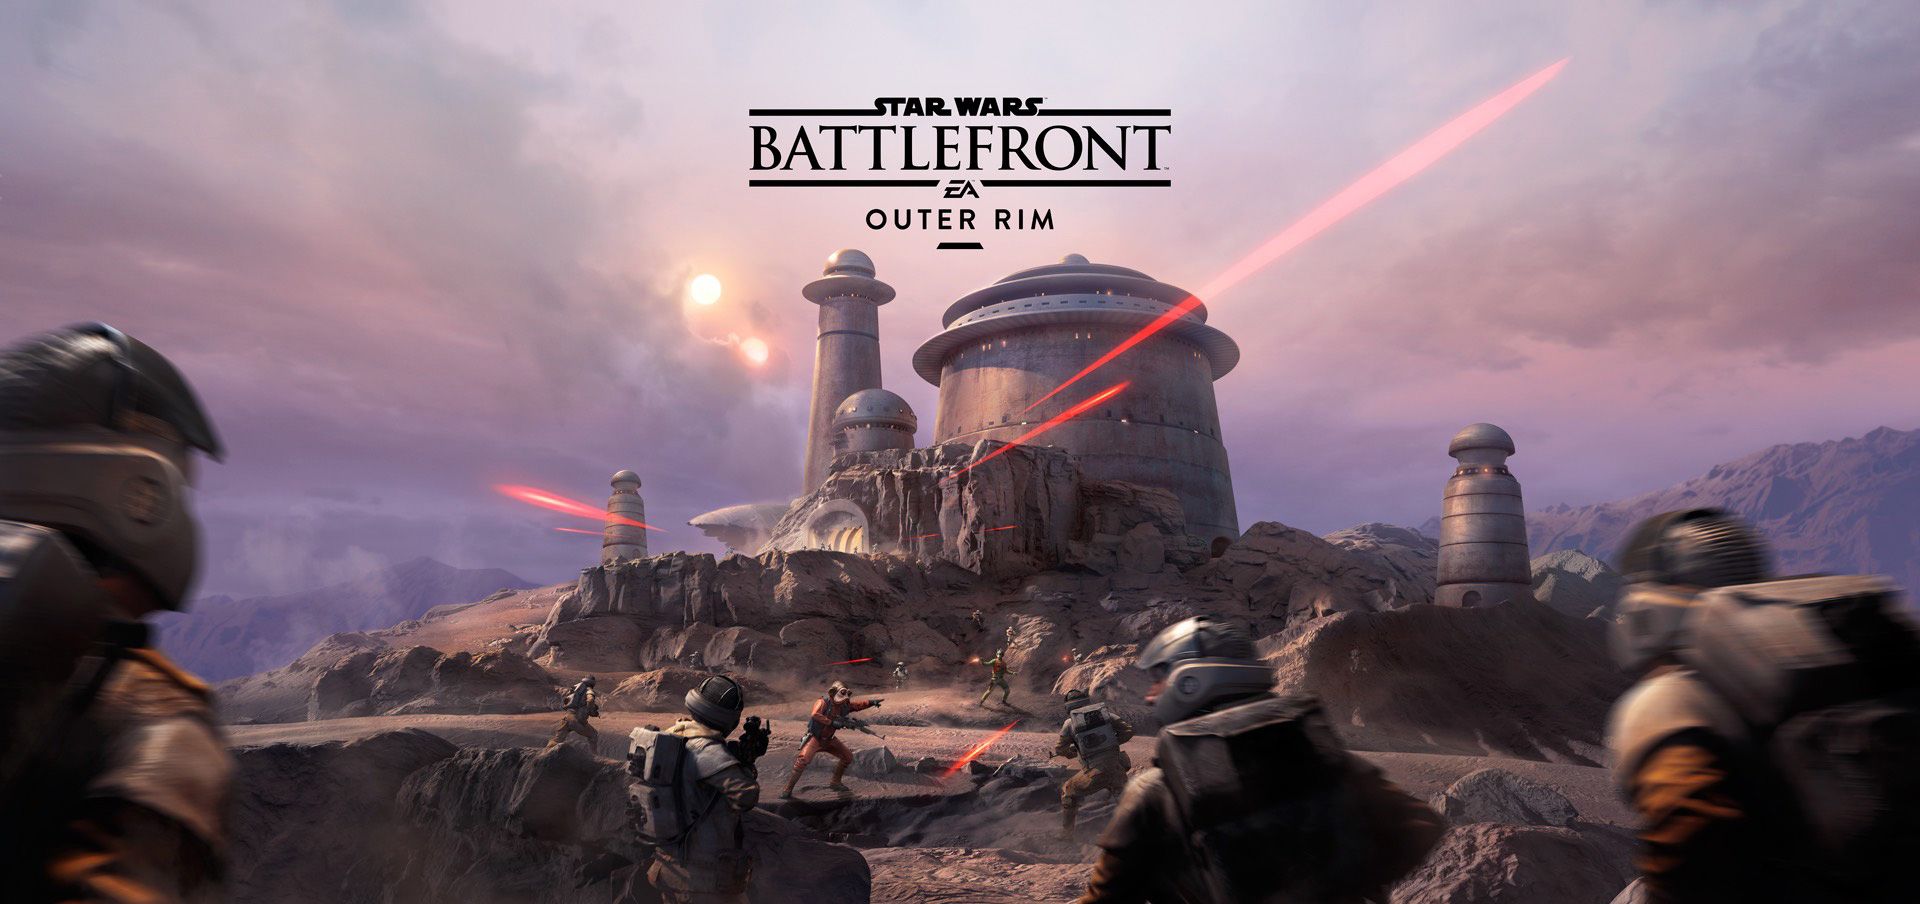 Star Wars: Battlefront, il DLC Outer Rim presto disponibile